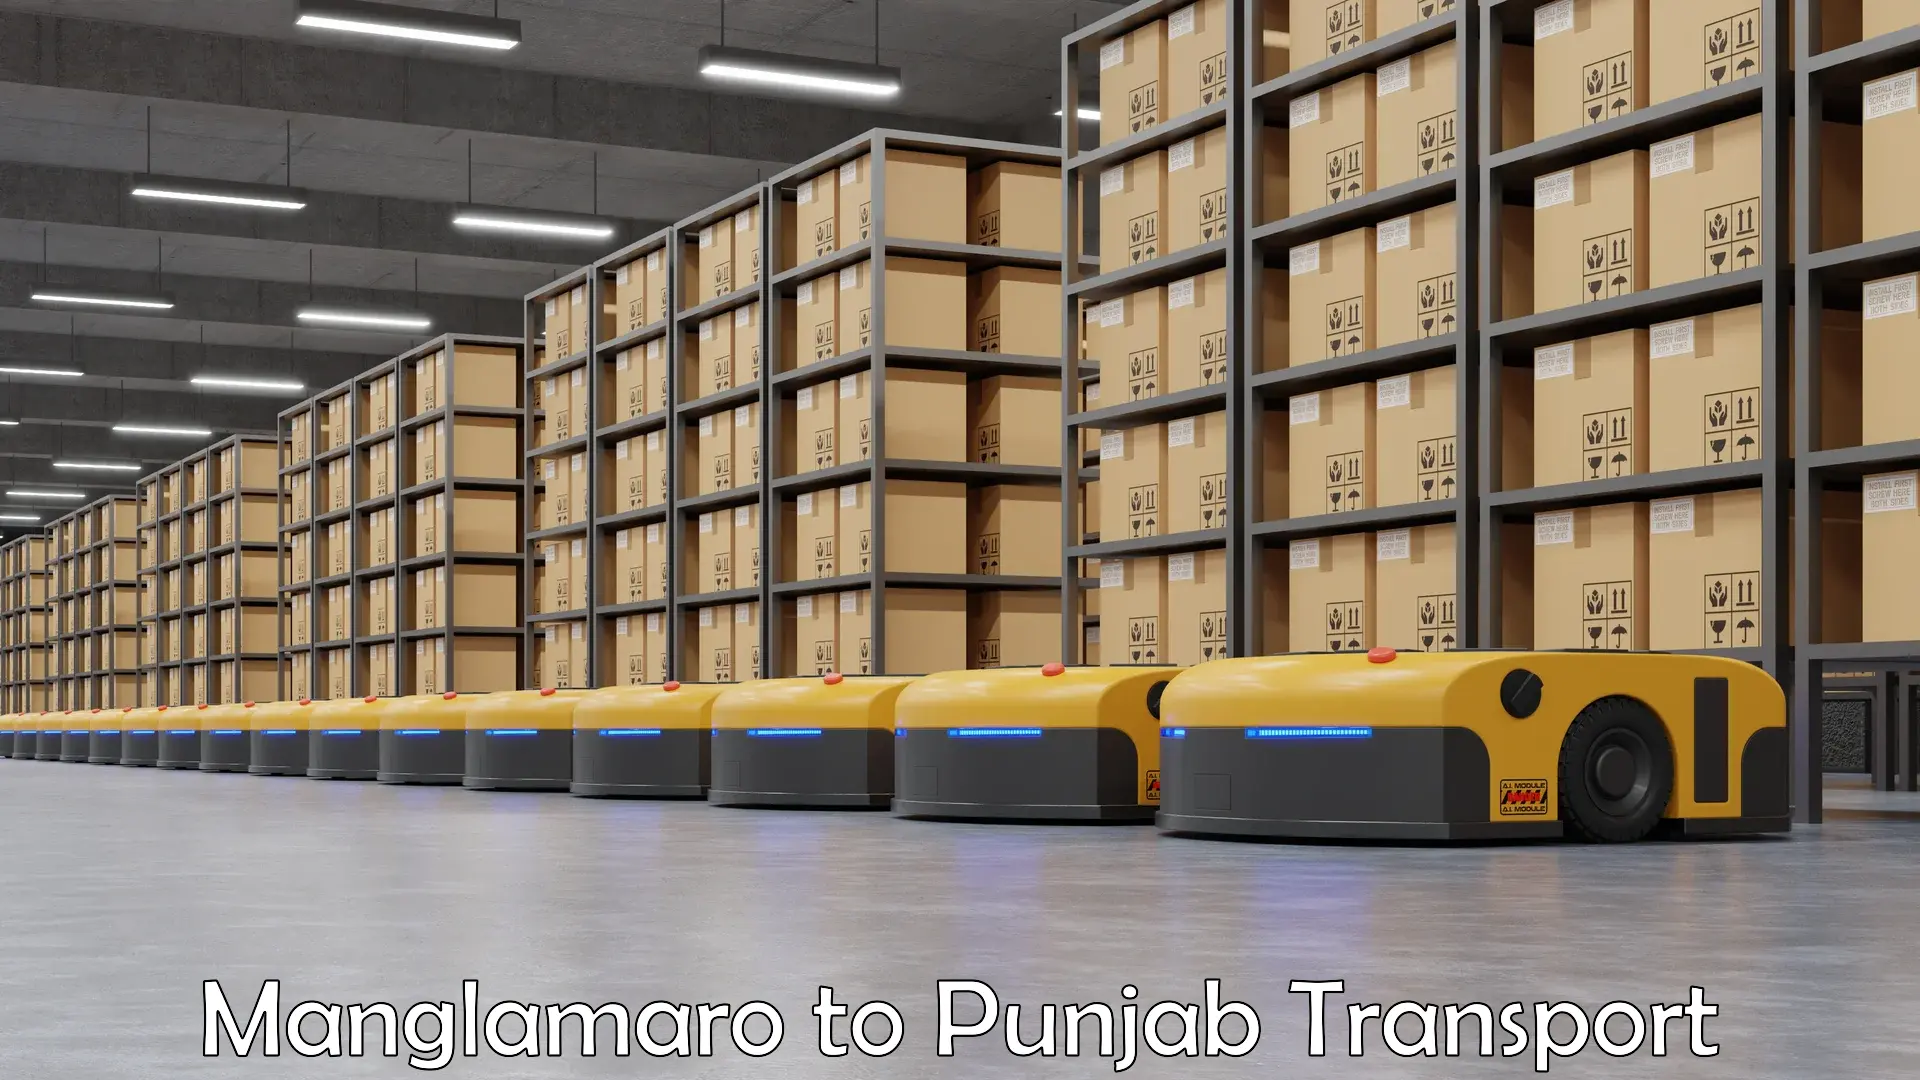 International cargo transportation services Manglamaro to Punjab